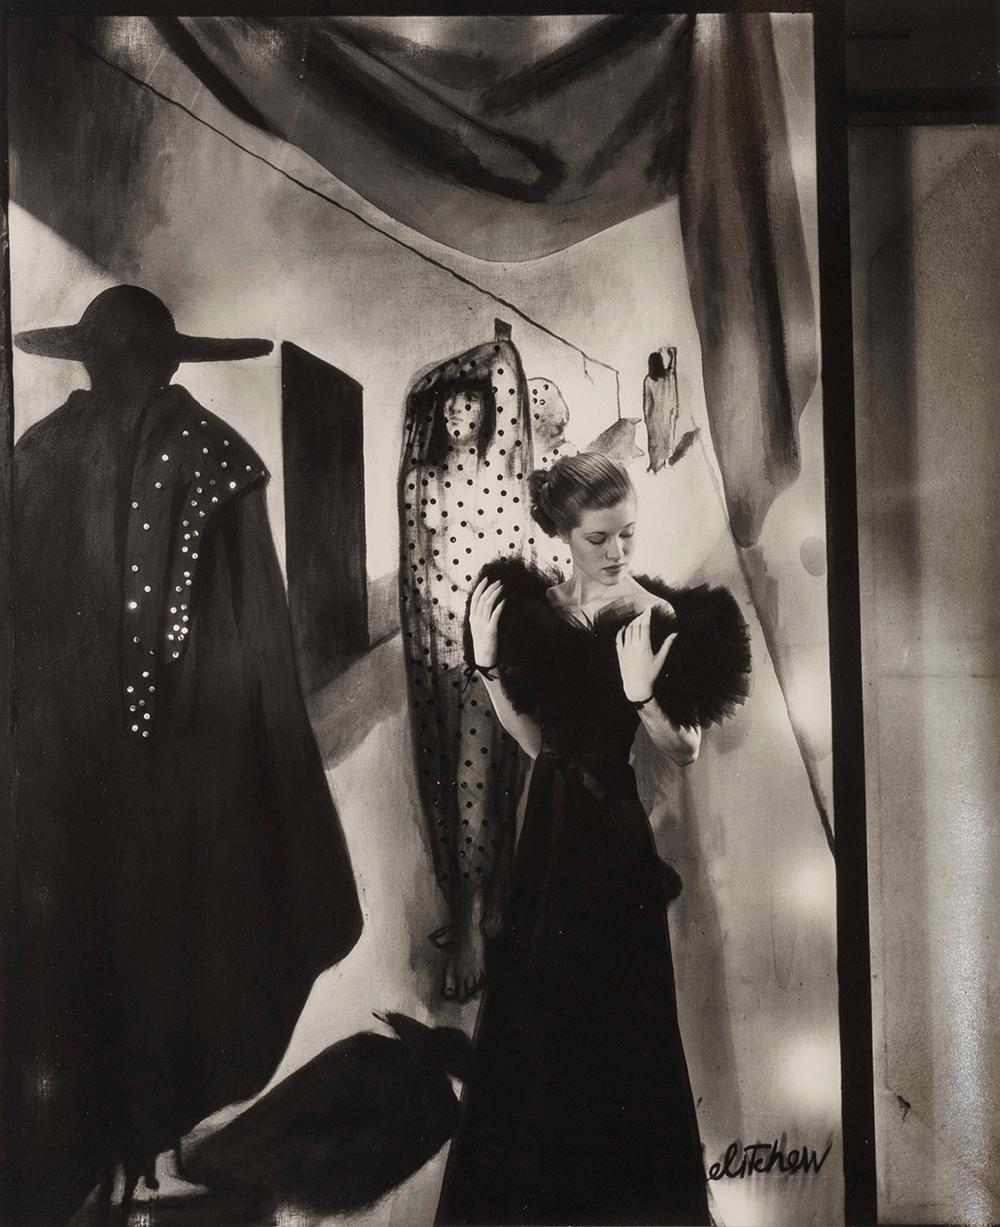 Mary Taylor, c.1934 - Cecil Beaton (Photographie de portrait/Photographie de mode)
Inscription "Mary Taylor" d'une main inconnue et cachet à l'encre du copyright des photographes au verso
Tirage à la gélatine argentique, imprimé vers 1960
9 1/4 x 7